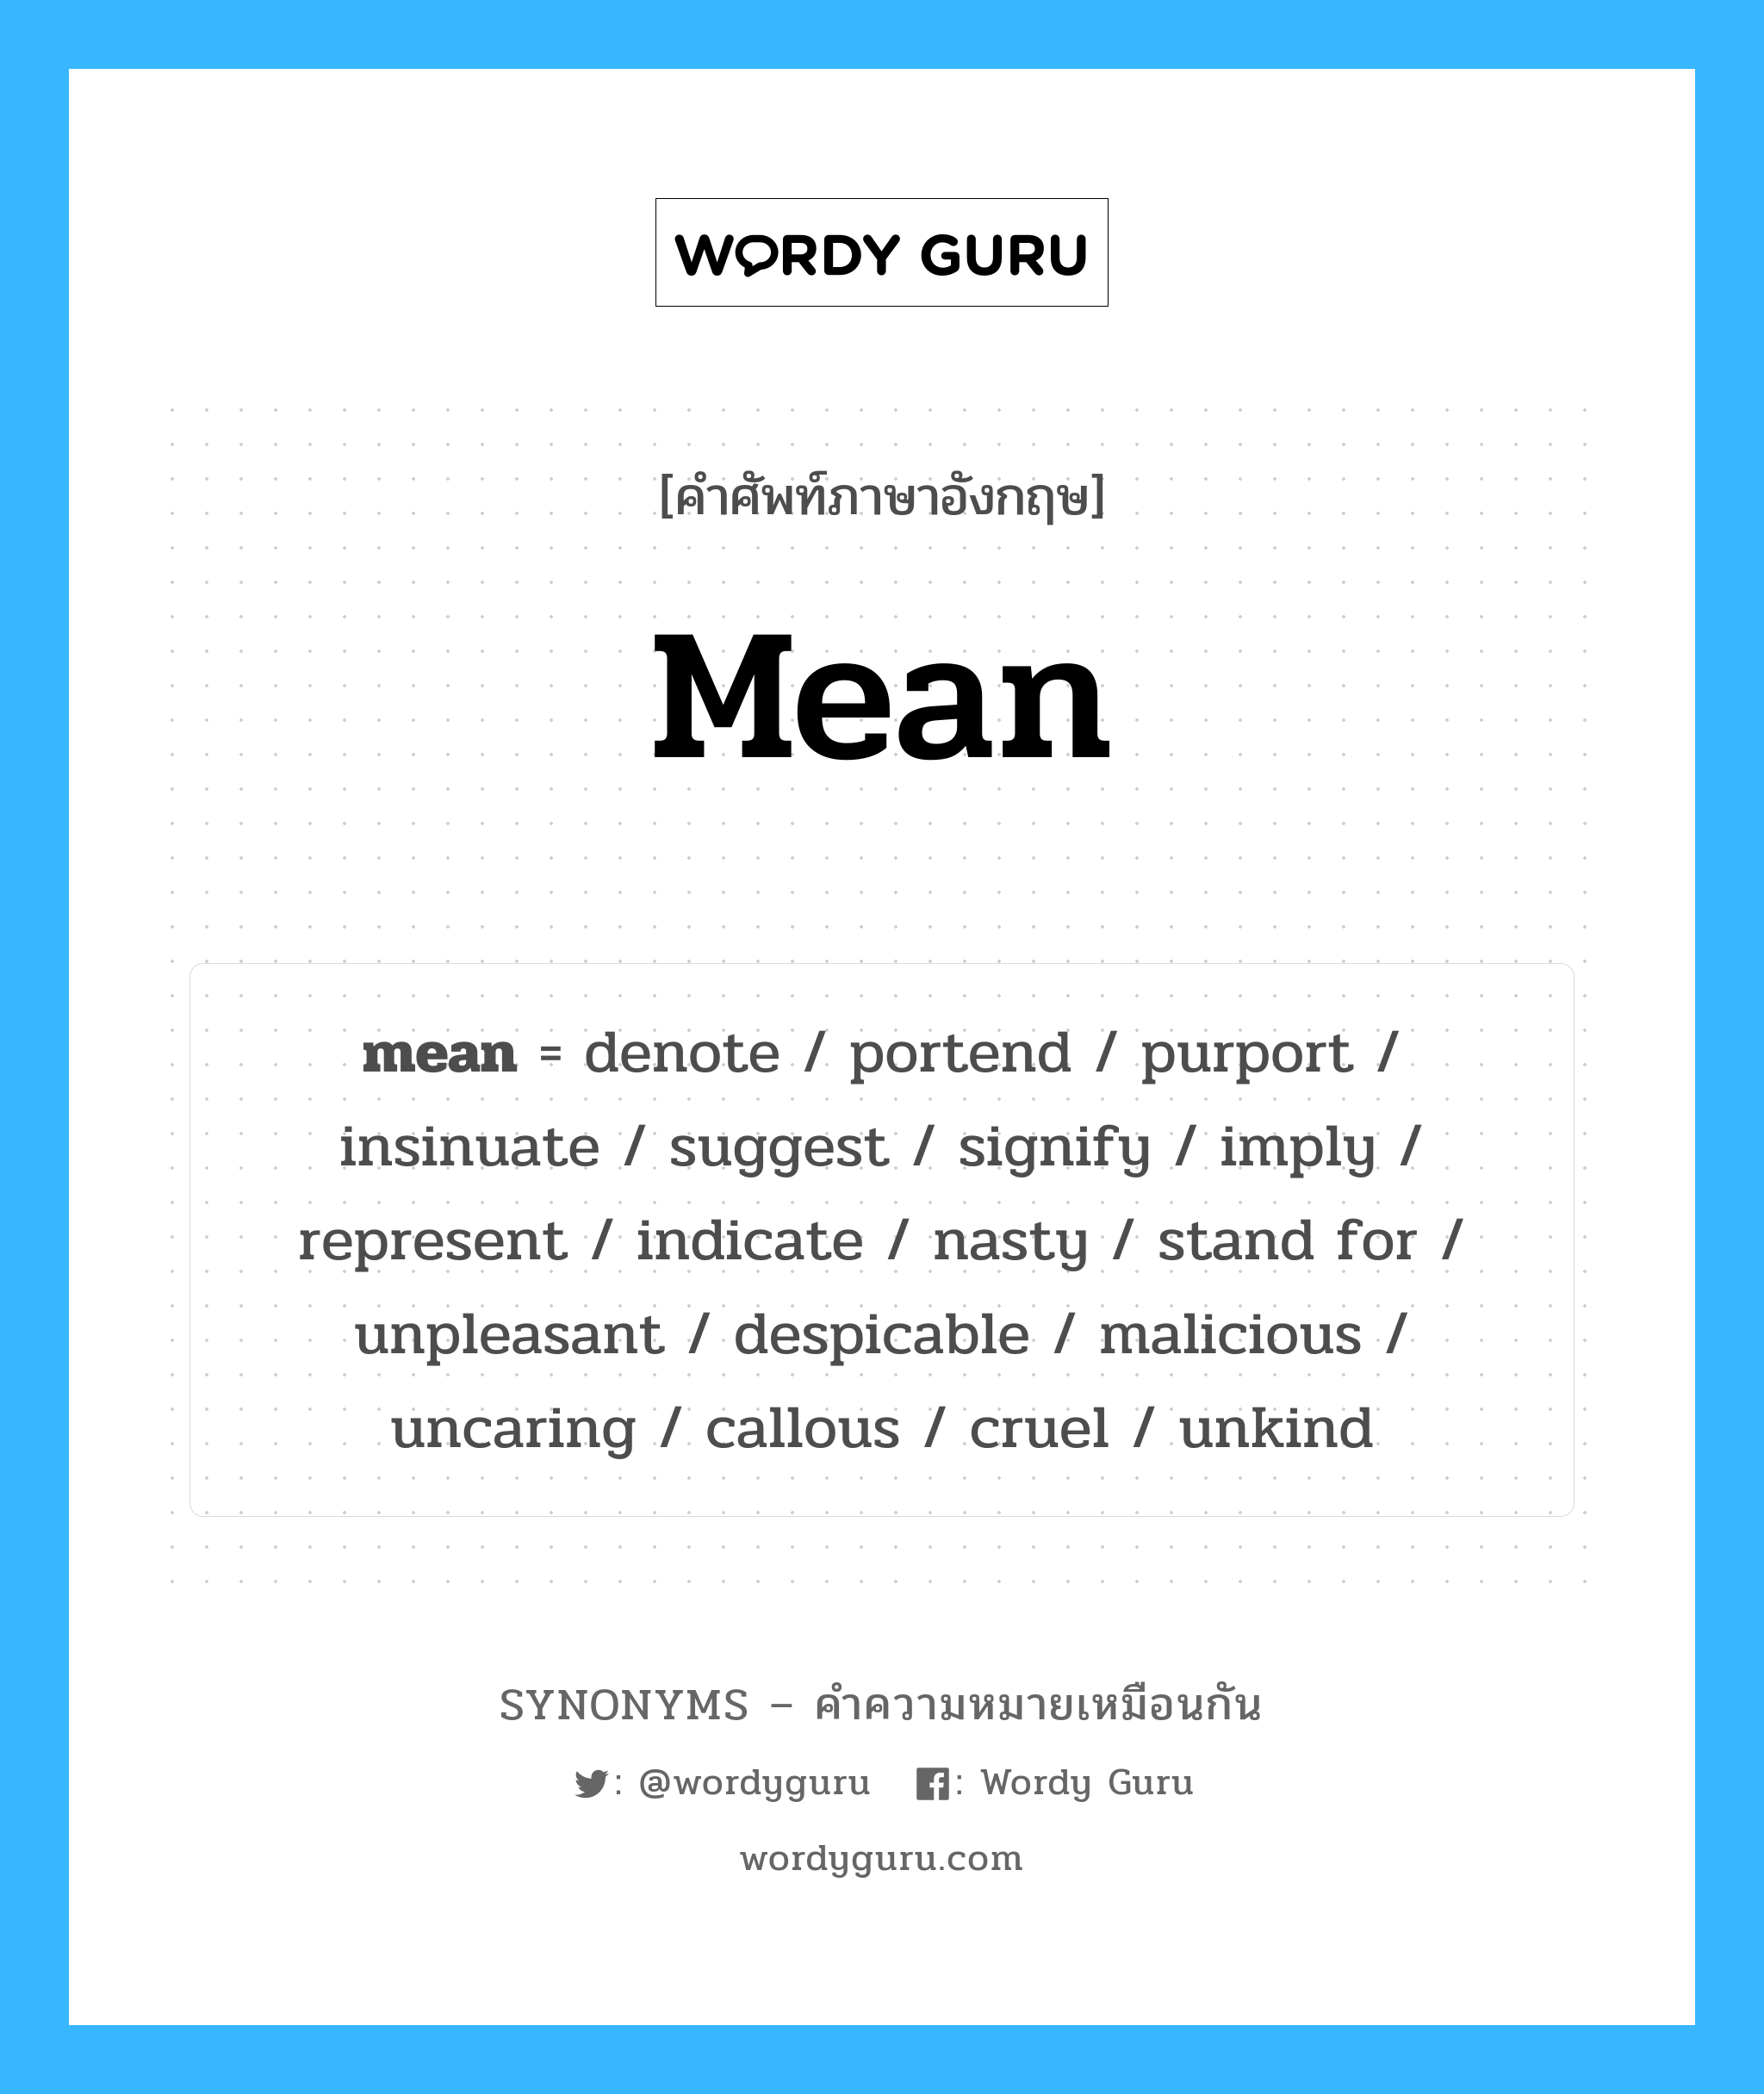 suggest เป็นหนึ่งใน mean และมีคำอื่น ๆ อีกดังนี้, คำศัพท์ภาษาอังกฤษ suggest ความหมายคล้ายกันกับ mean แปลว่า แนะนำ หมวด mean